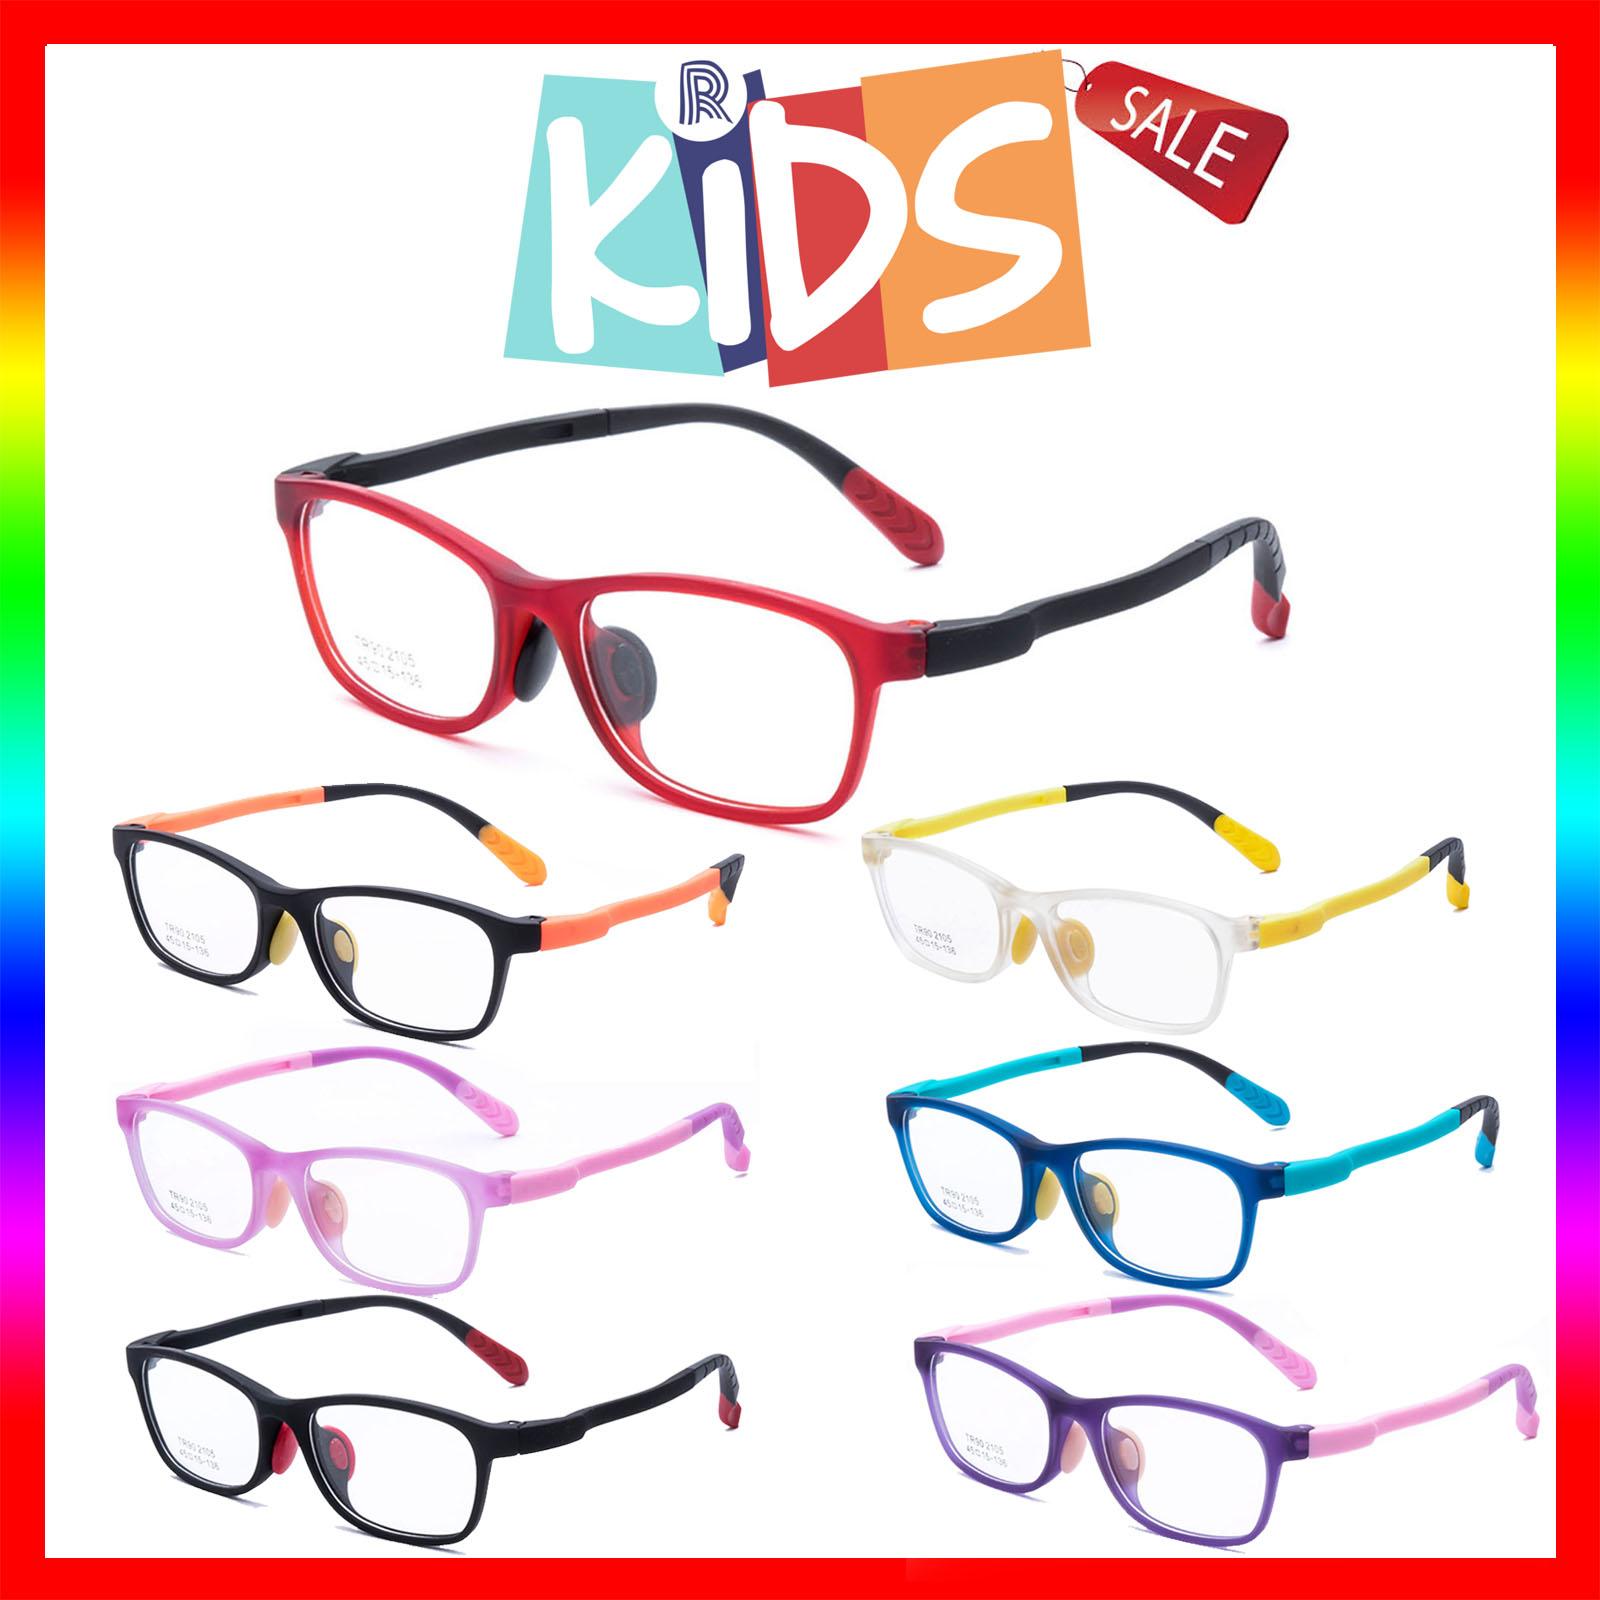 แว่นตาเกาหลีเด็ก Fashion Korea Children แว่นตาเด็ก รุ่น 2105 กรอบแว่นตาเด็ก Square ทรงสี่เหลี่ยม Eyeglass baby frame ( สำหรับตัดเลนส์ ) วัสดุ TR-90 เบาและยืดหยุนได้สูง ขาข้อต่อ Kid eyewear Glasses